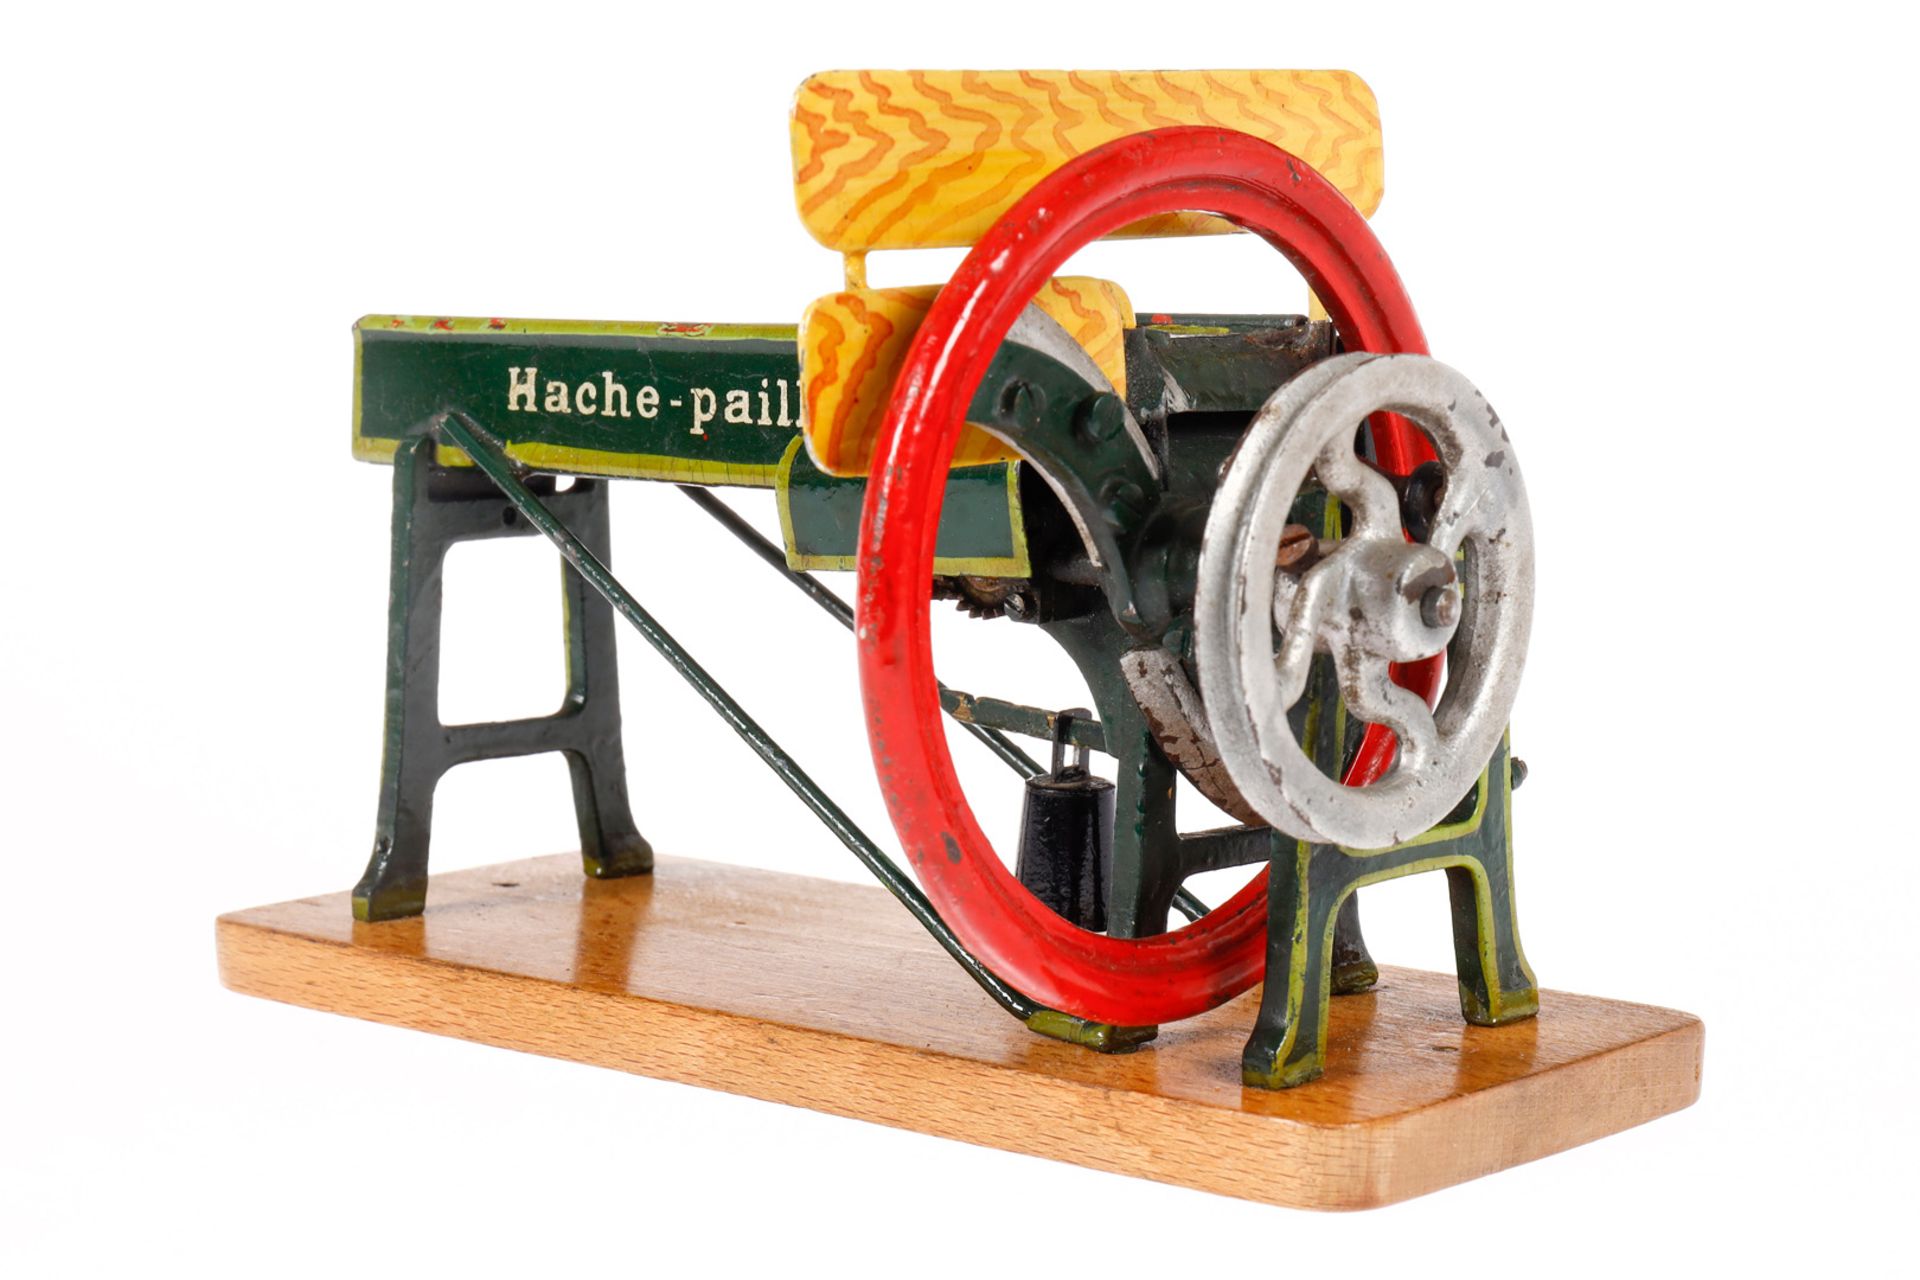 Märklin Getreide-Schneidemaschine ”Hache-Paille”, uralt, HL, mit Gewicht und Öldeckeln, leichte